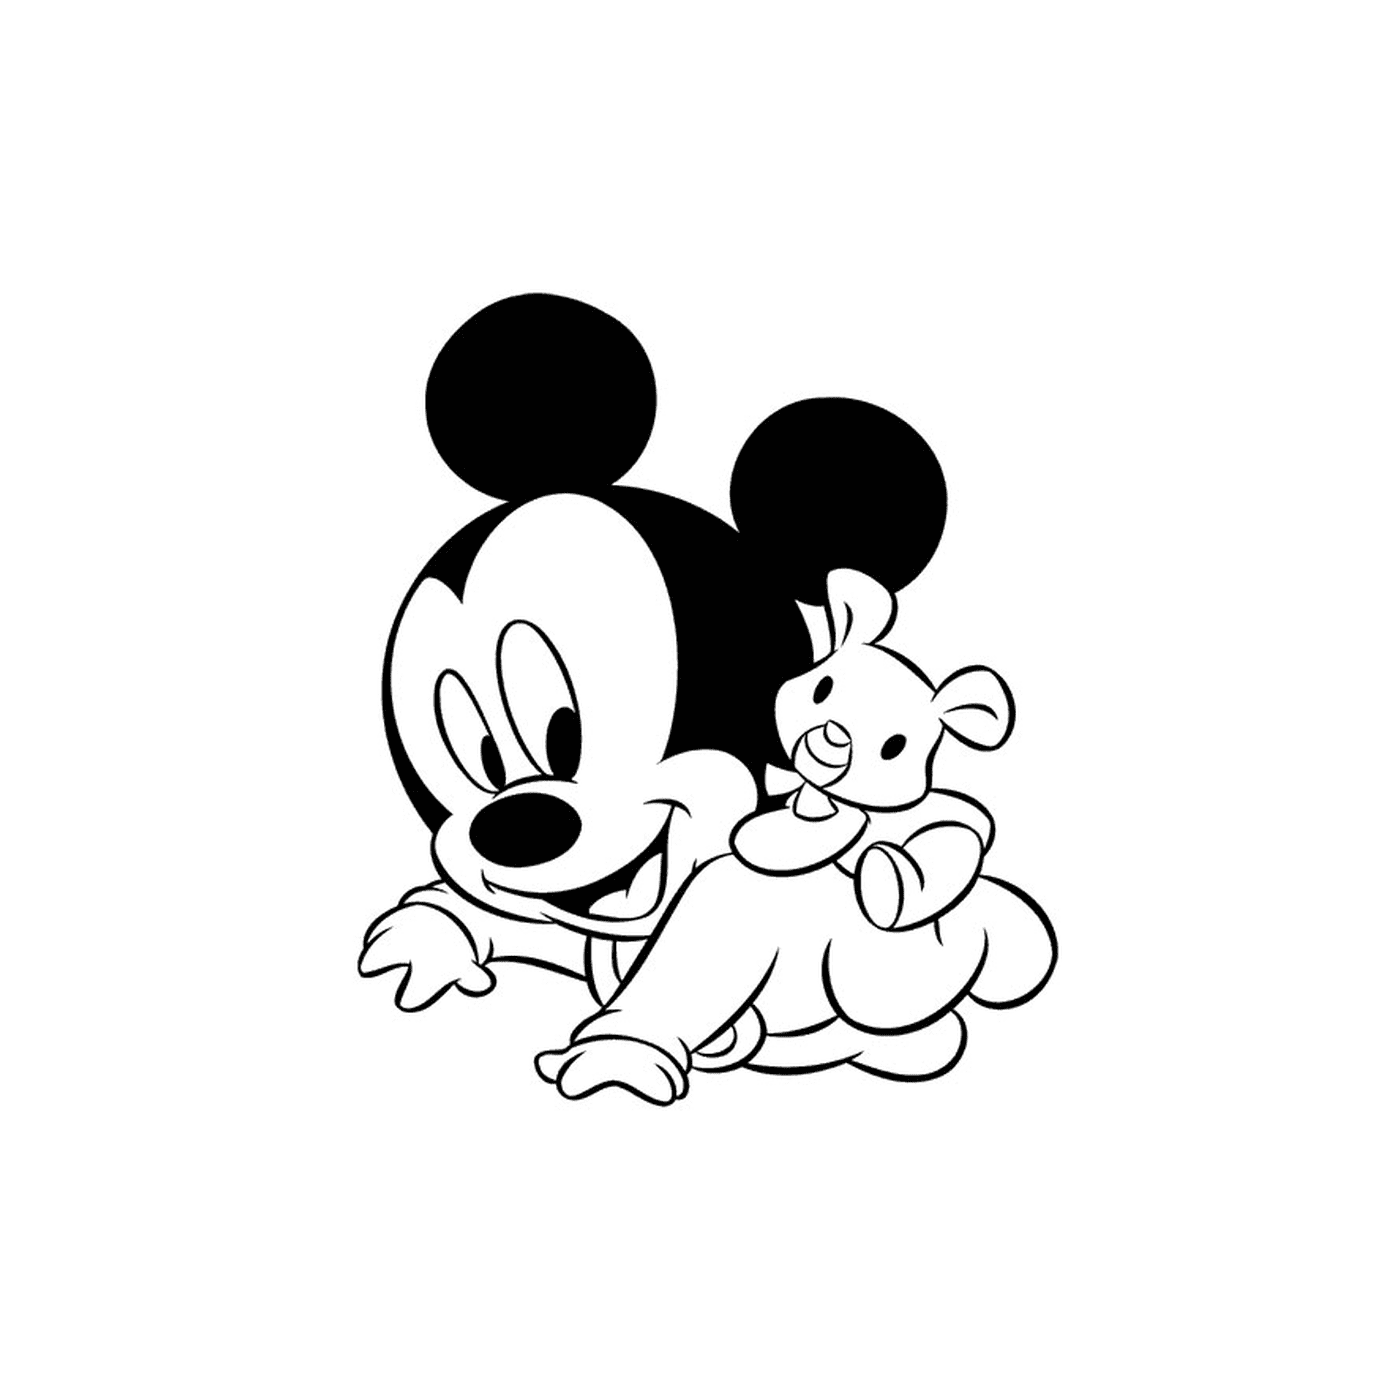  bebê Mickey Mouse segurando um urso de pelú 